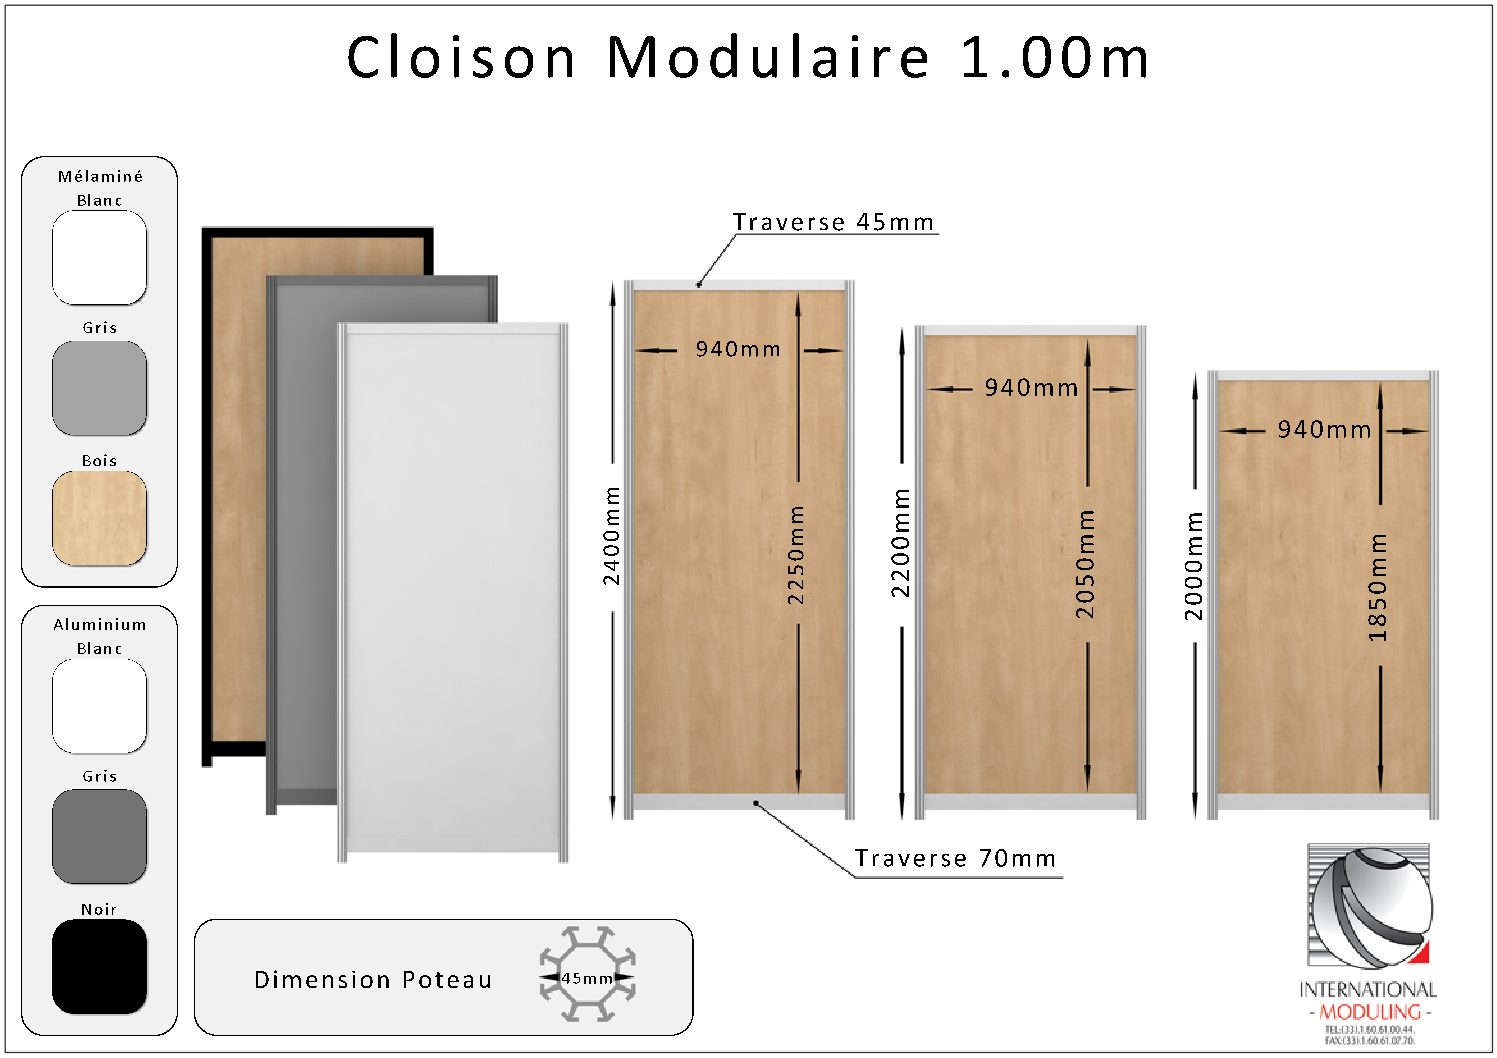 Vente Cloison Modulaire création stands et salons professionnels